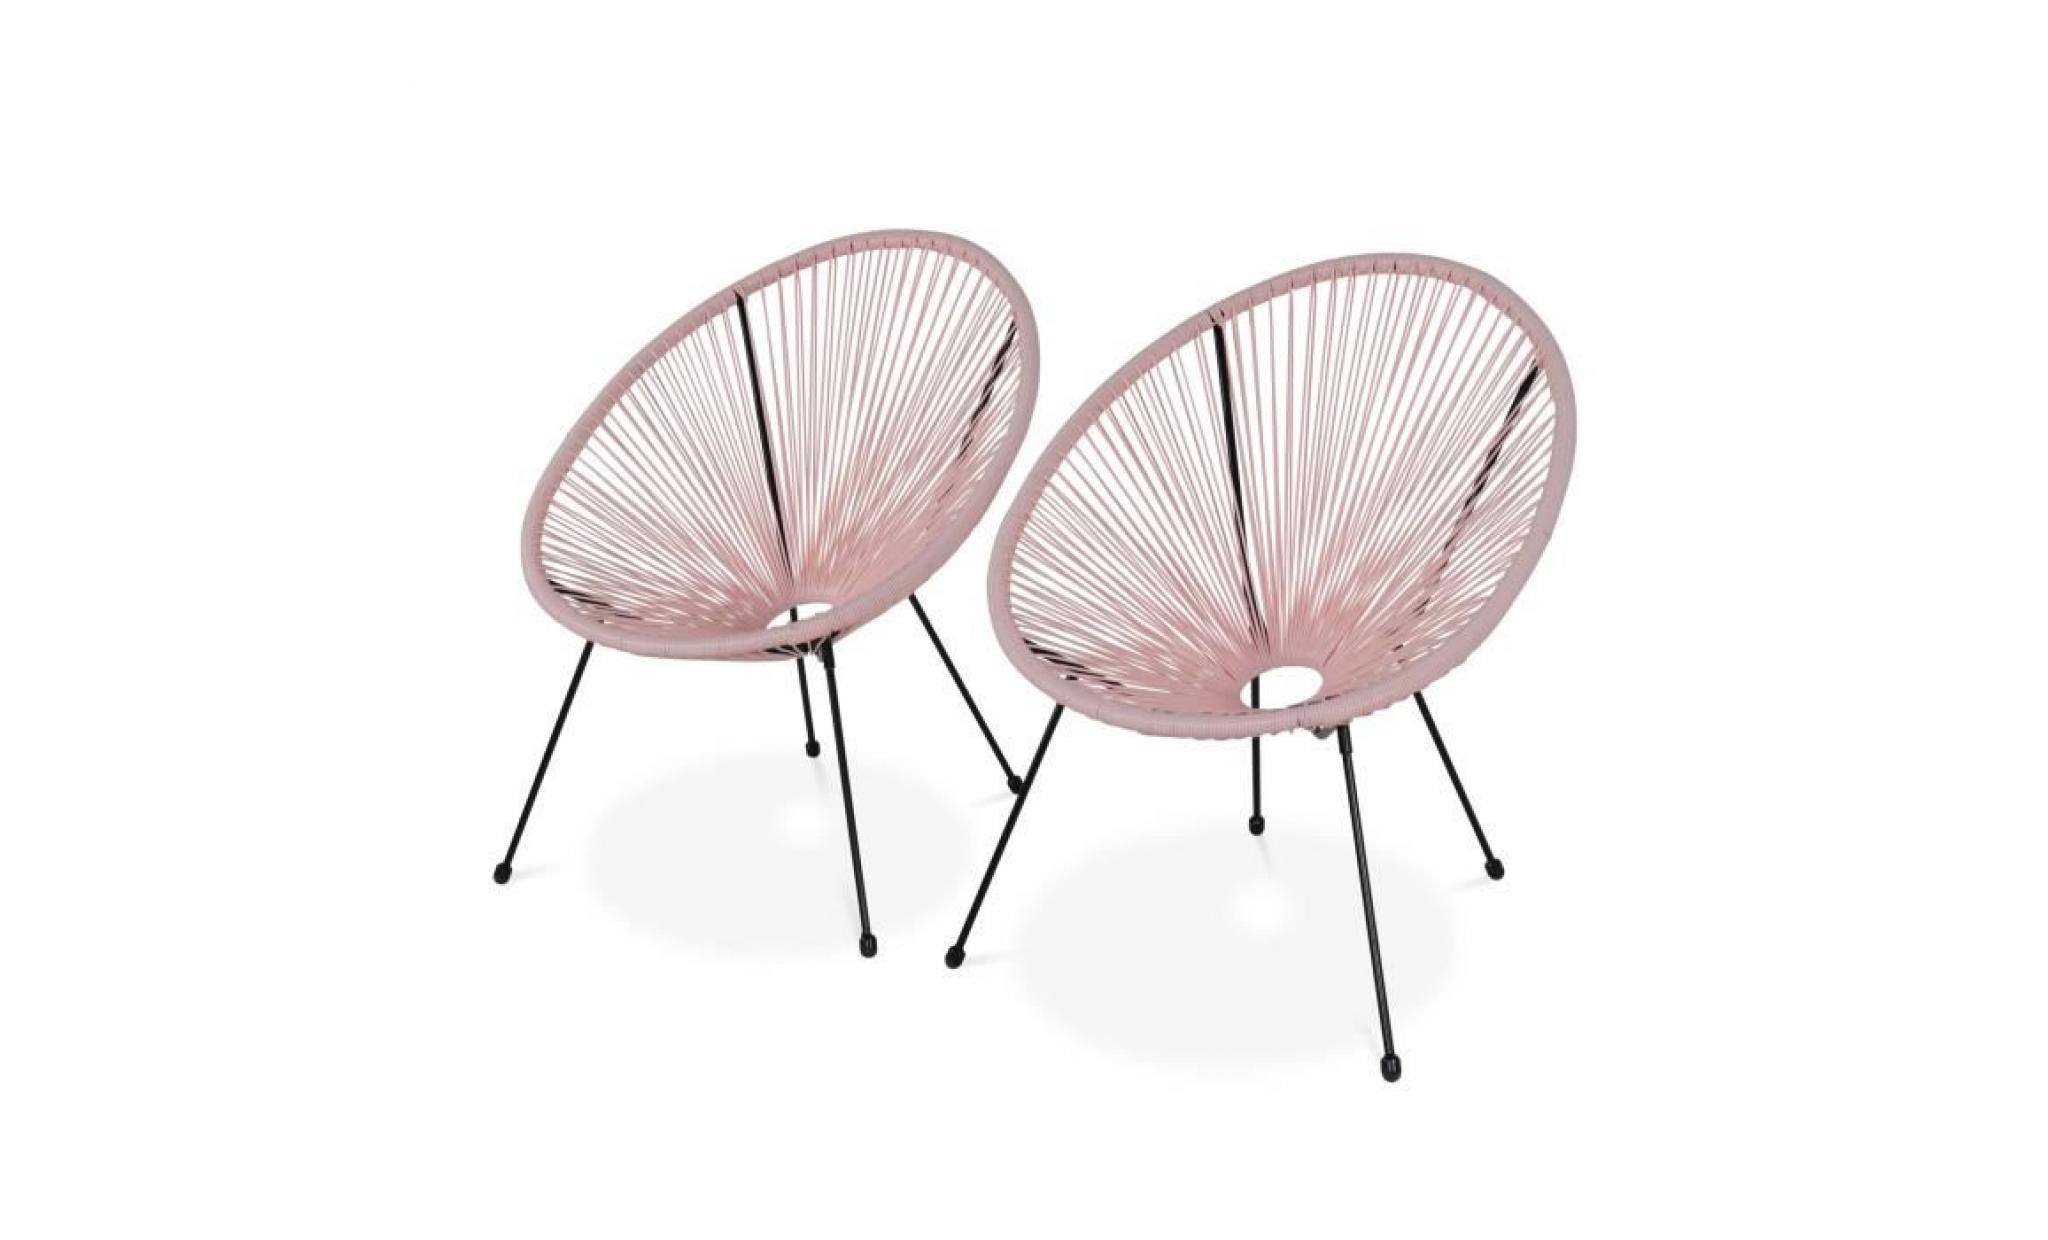 lot de 2 fauteuils design oeuf   acapulco rose pale   fauteuils 4 pieds design rétro, cordage plastique, intérieur / extérieur